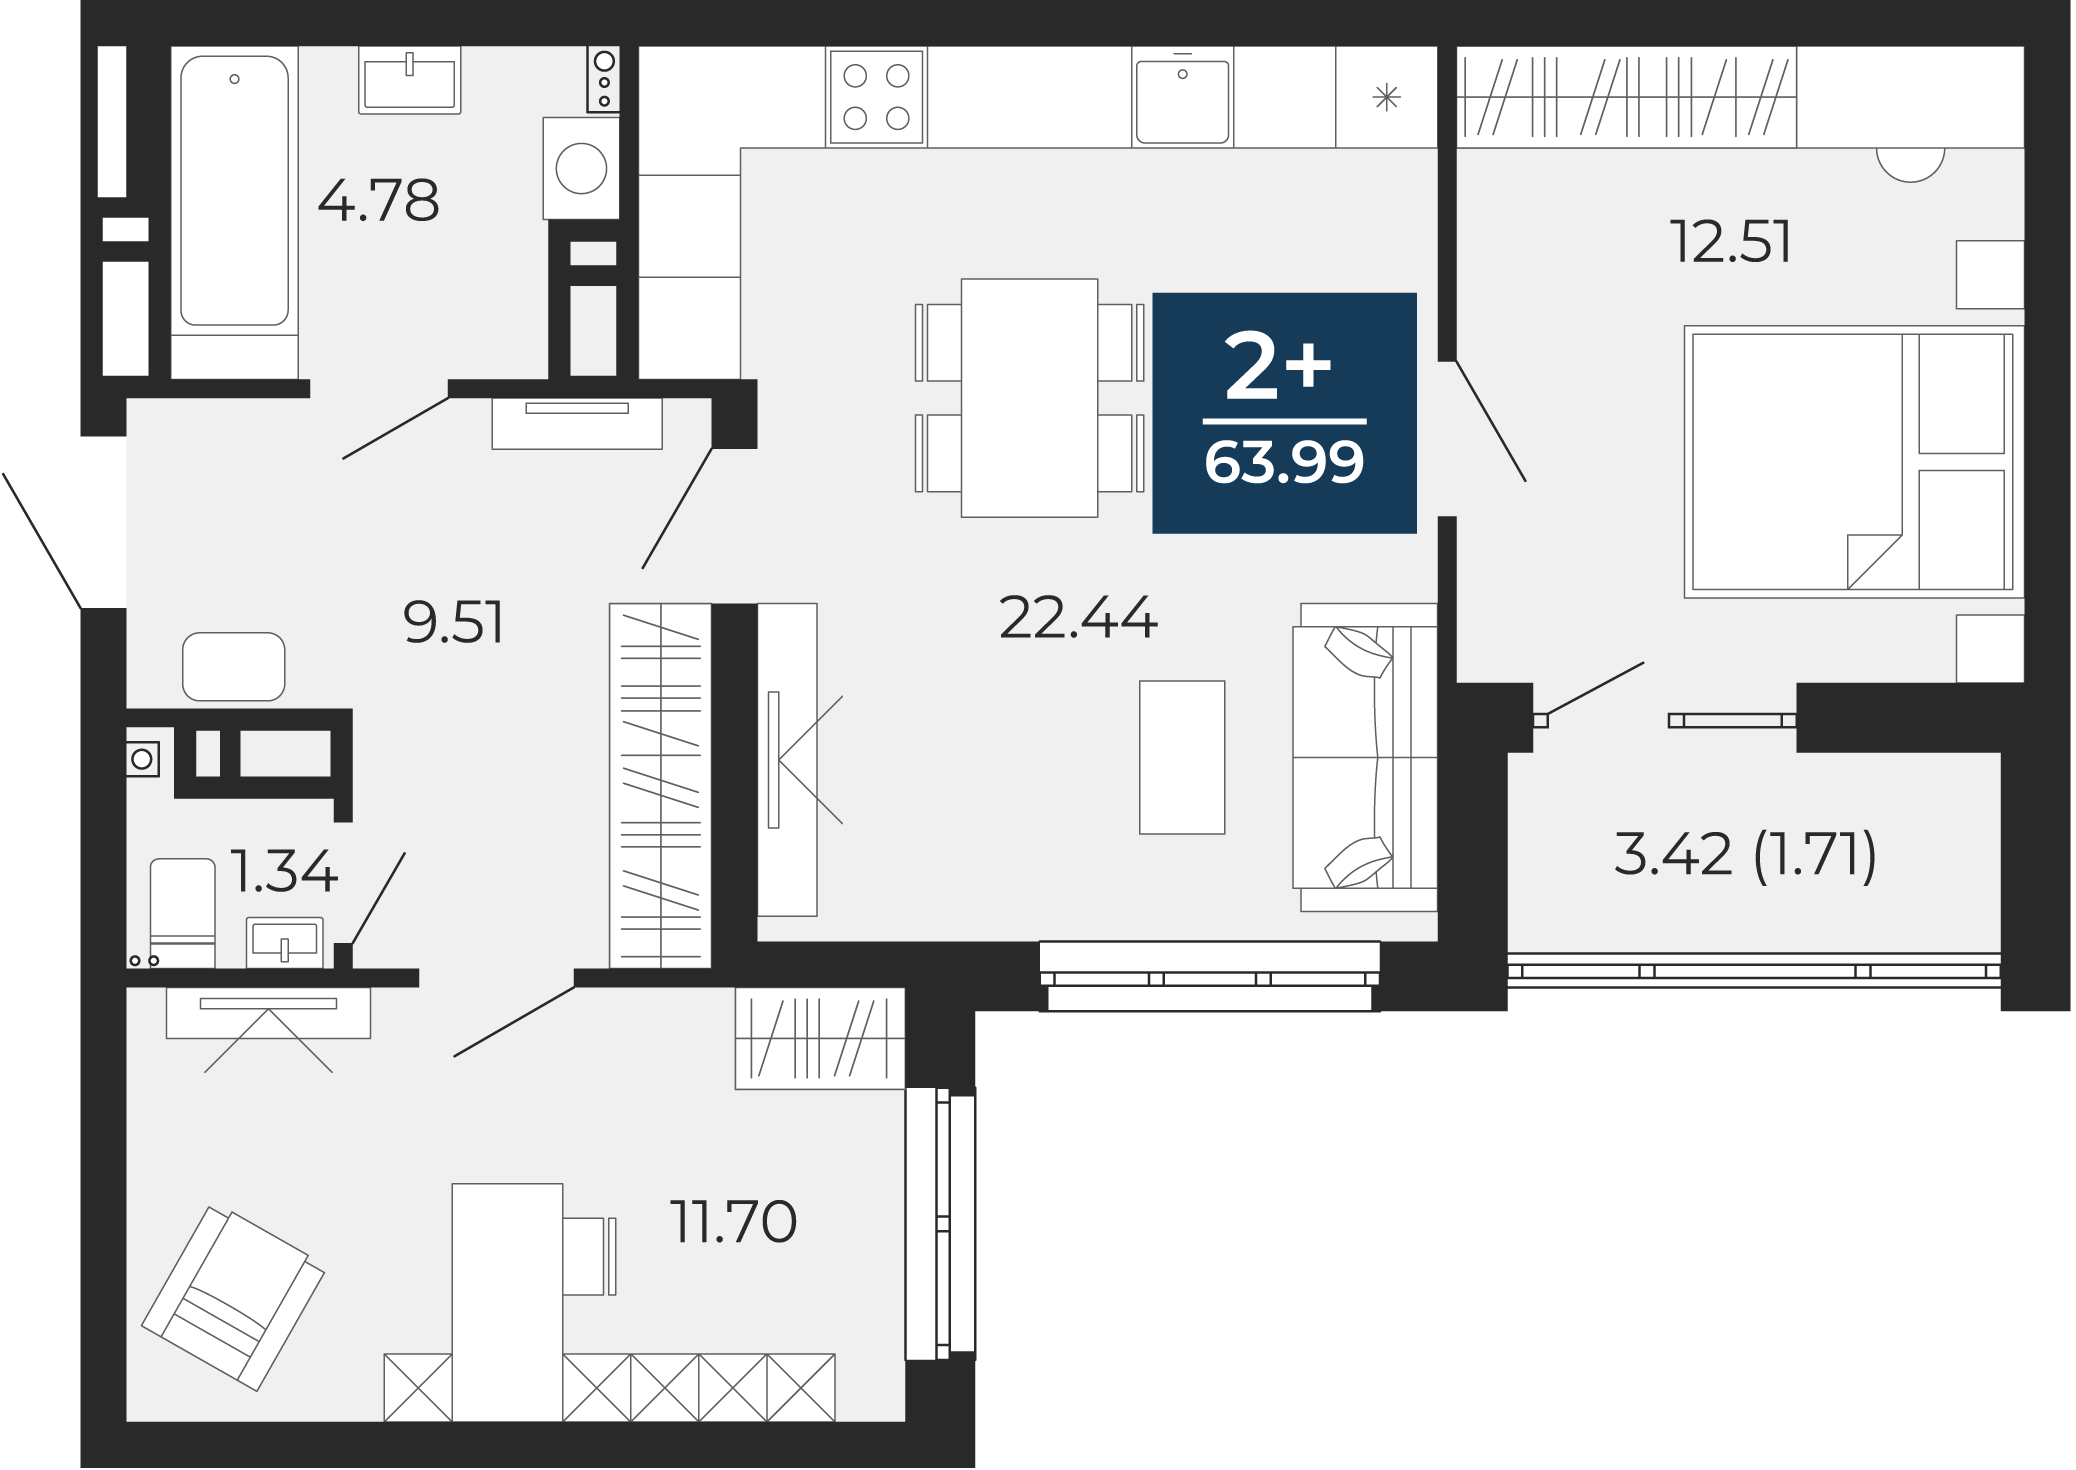 Квартира № 125, 2-комнатная, 63.99 кв. м, 4 этаж